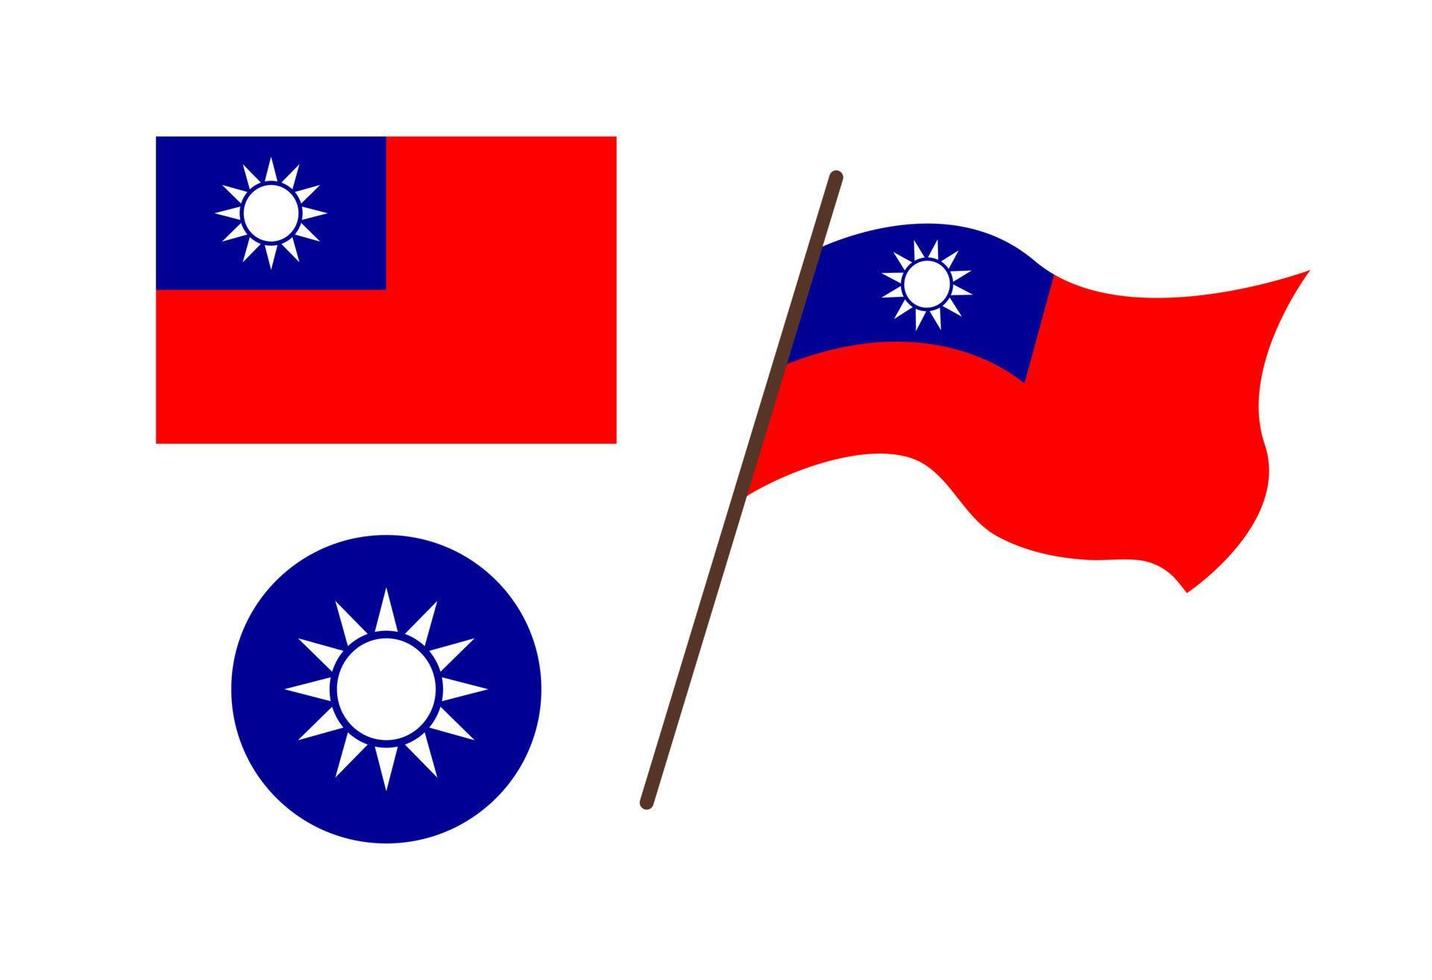 symboles de taïwan isolés. drapeau rouge de vecteur et emblème bleu avec forme de soleil blanc. agitant le drapeau de la république de chine, taiwan. illustration plate